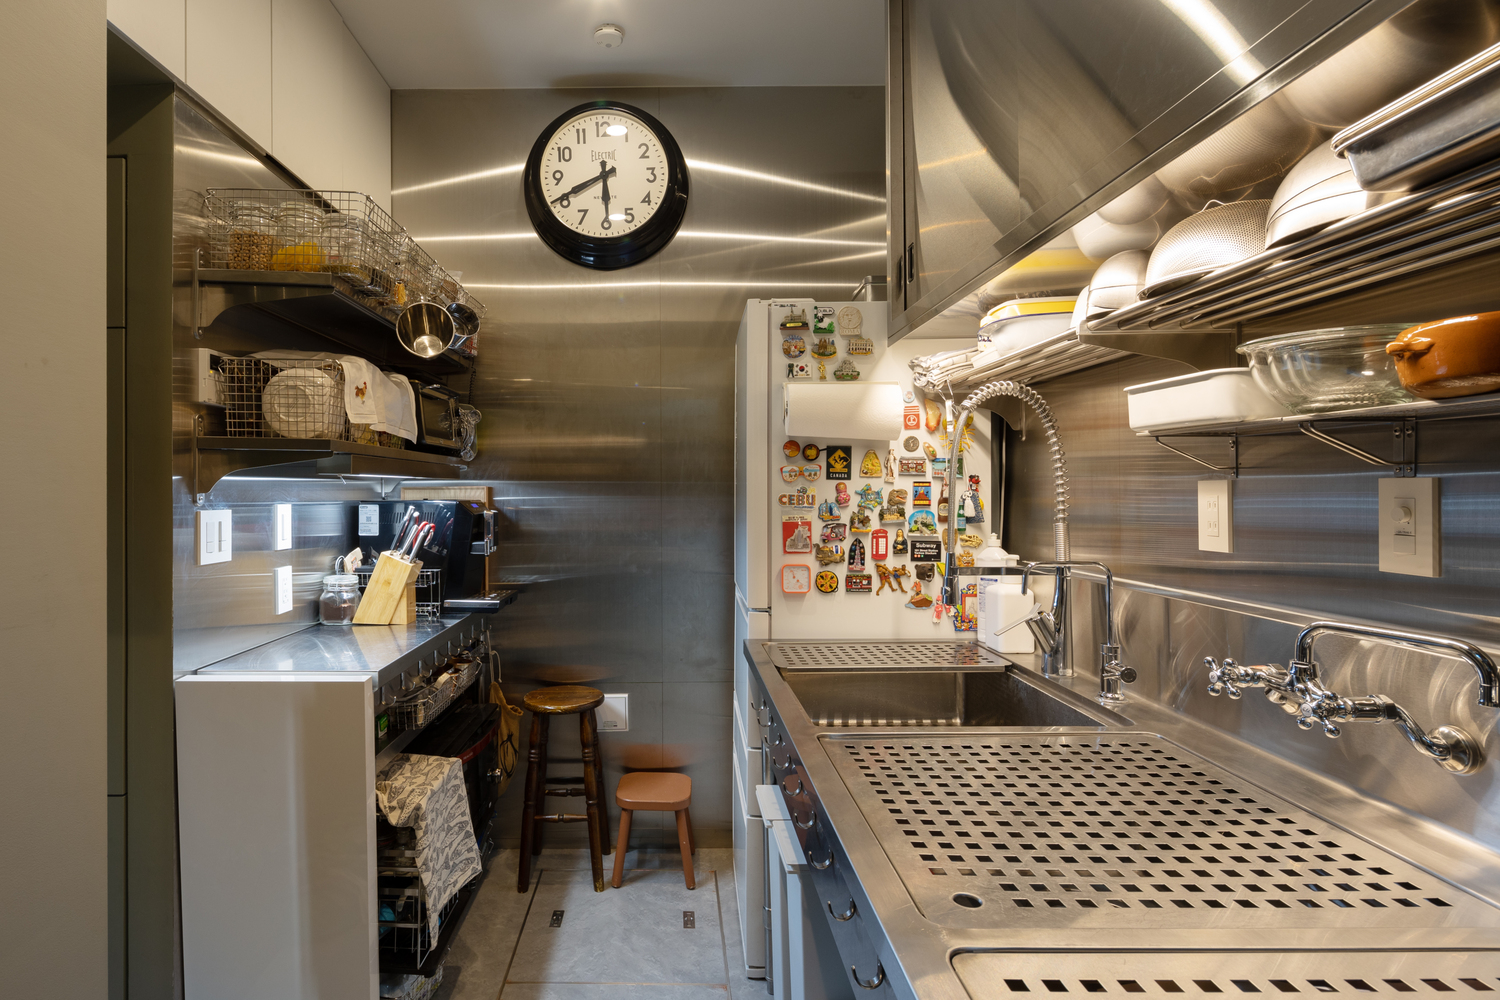 Phòng bếp tuy nhỏ hẹp nhưng gọn gàng, đầy đủ tiện nghi và thiết bị nấu nướng. Nội thất bằng vật liệu thép không gỉ bề mặt bóng loáng cho căn phòng vẻ hiện đại, sáng sủa.